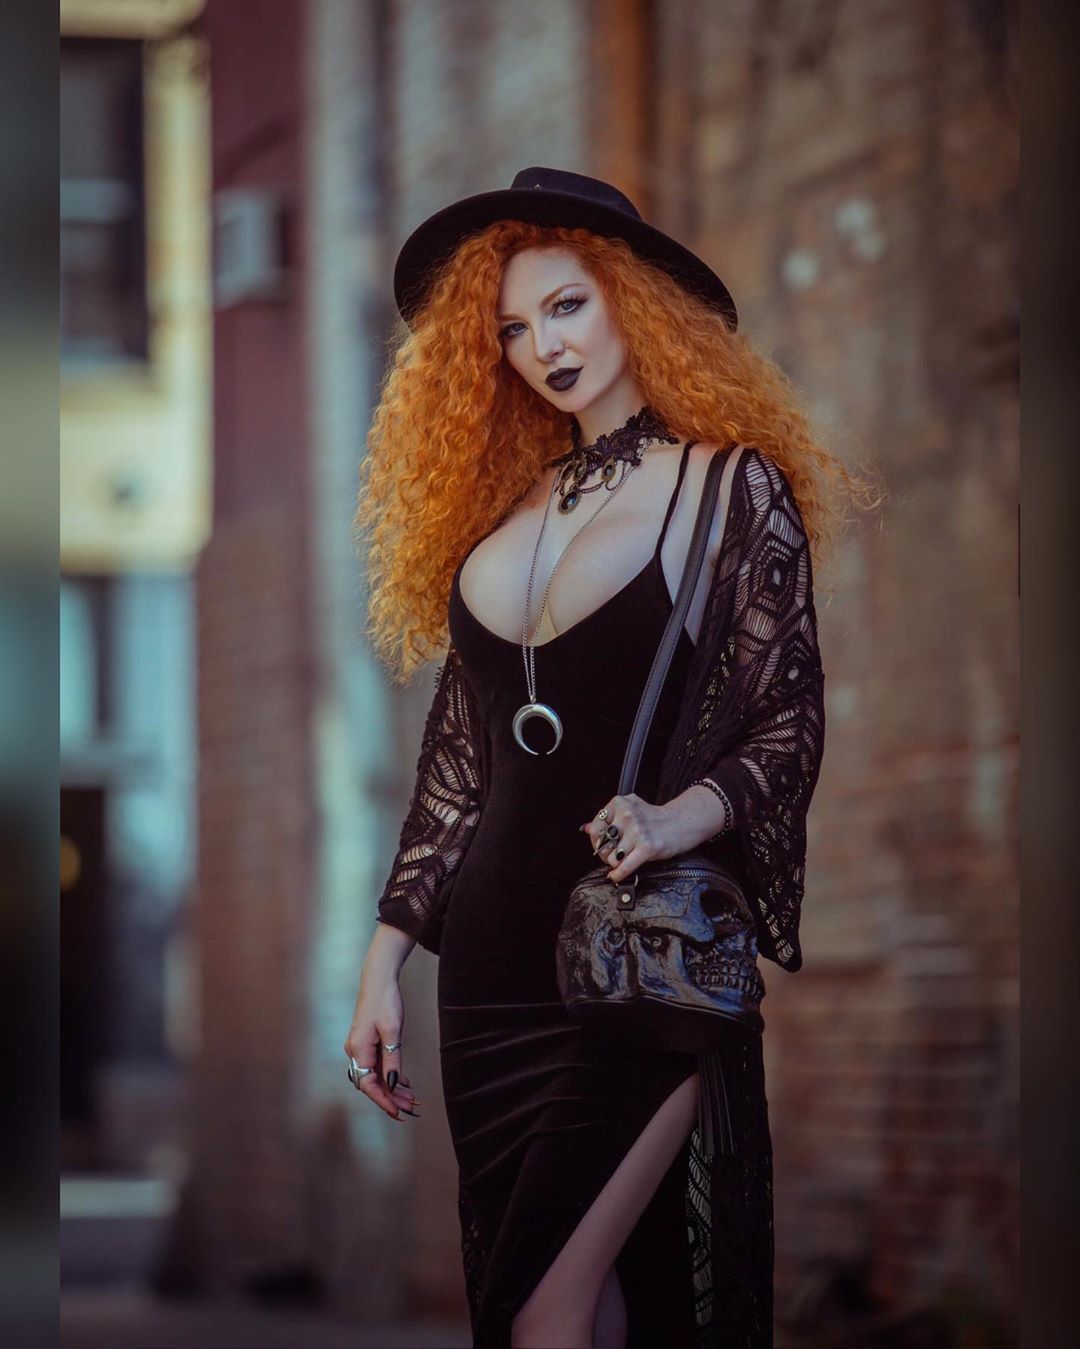 GothGirl cosplay by Ashlynne Dae